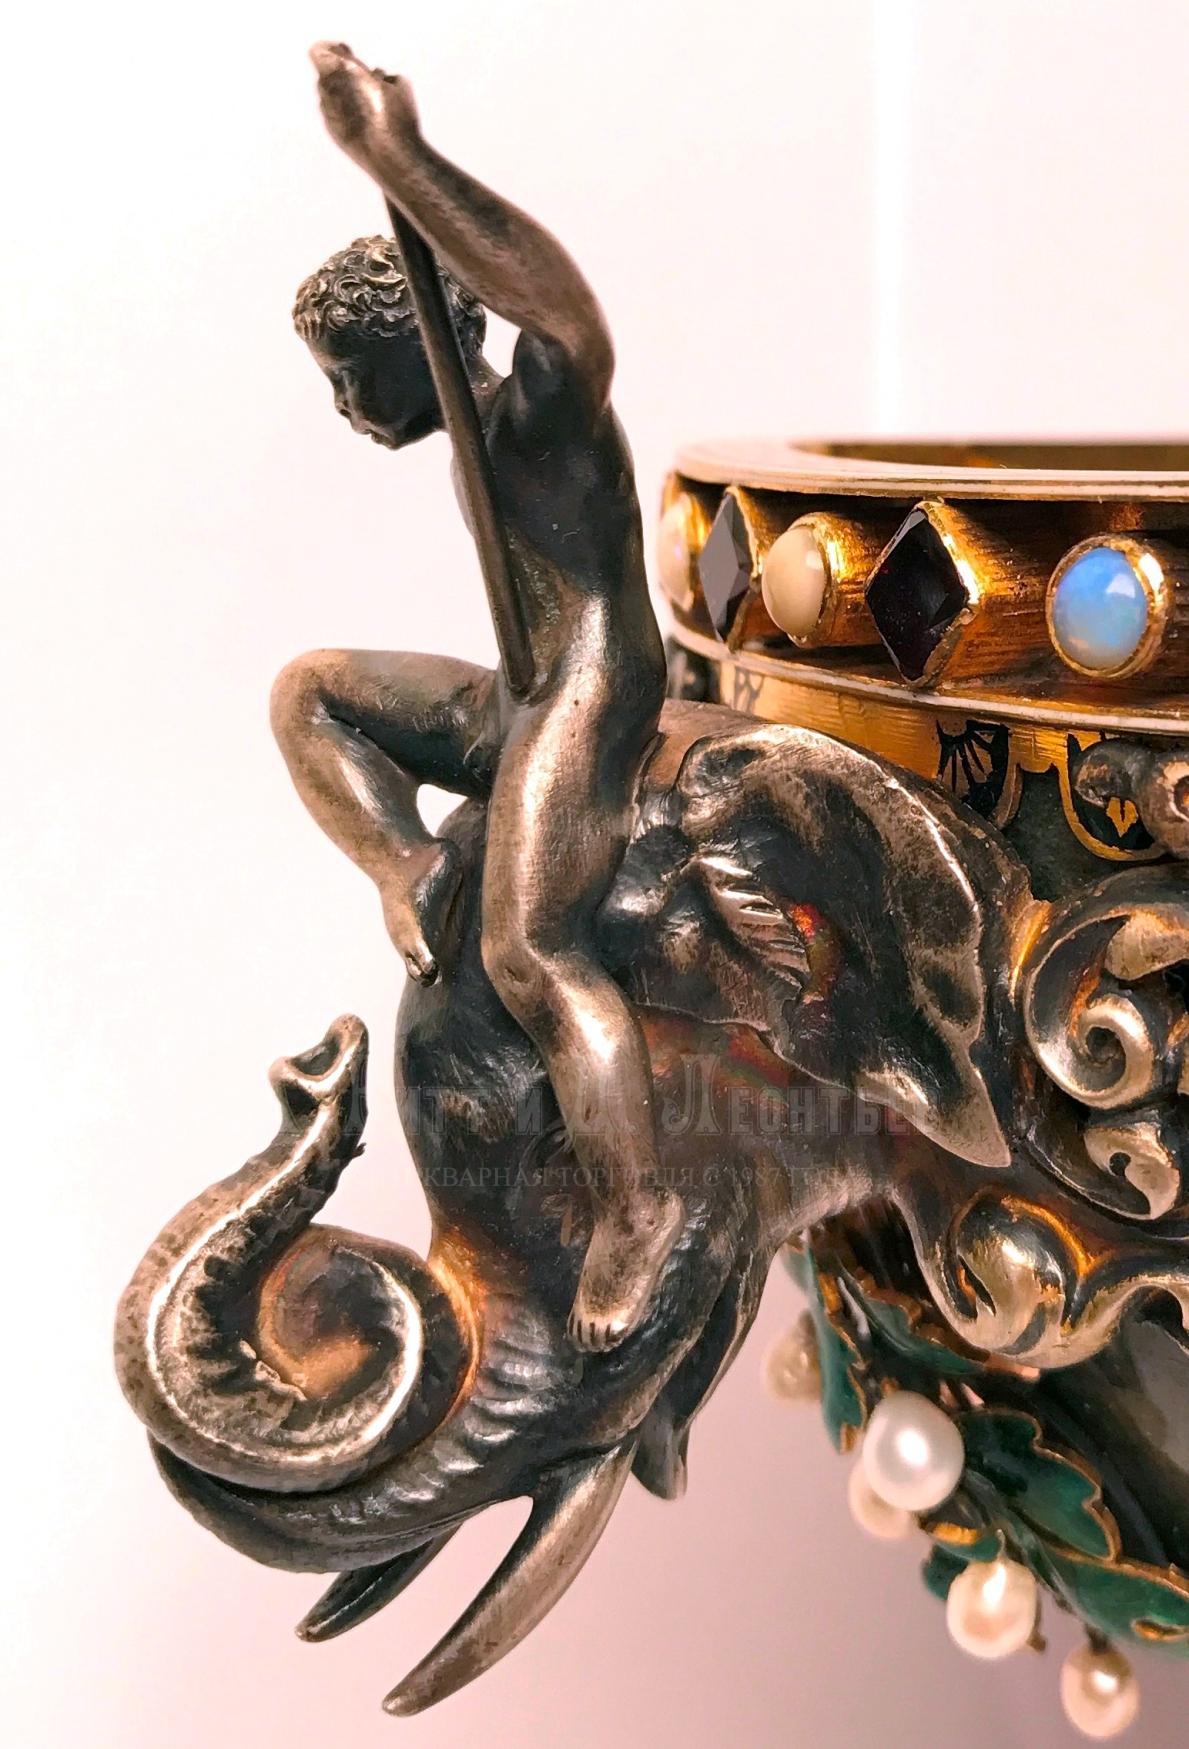 Ювелирная ваза с эмалью и драгоценными камнями в стиле ренессанс